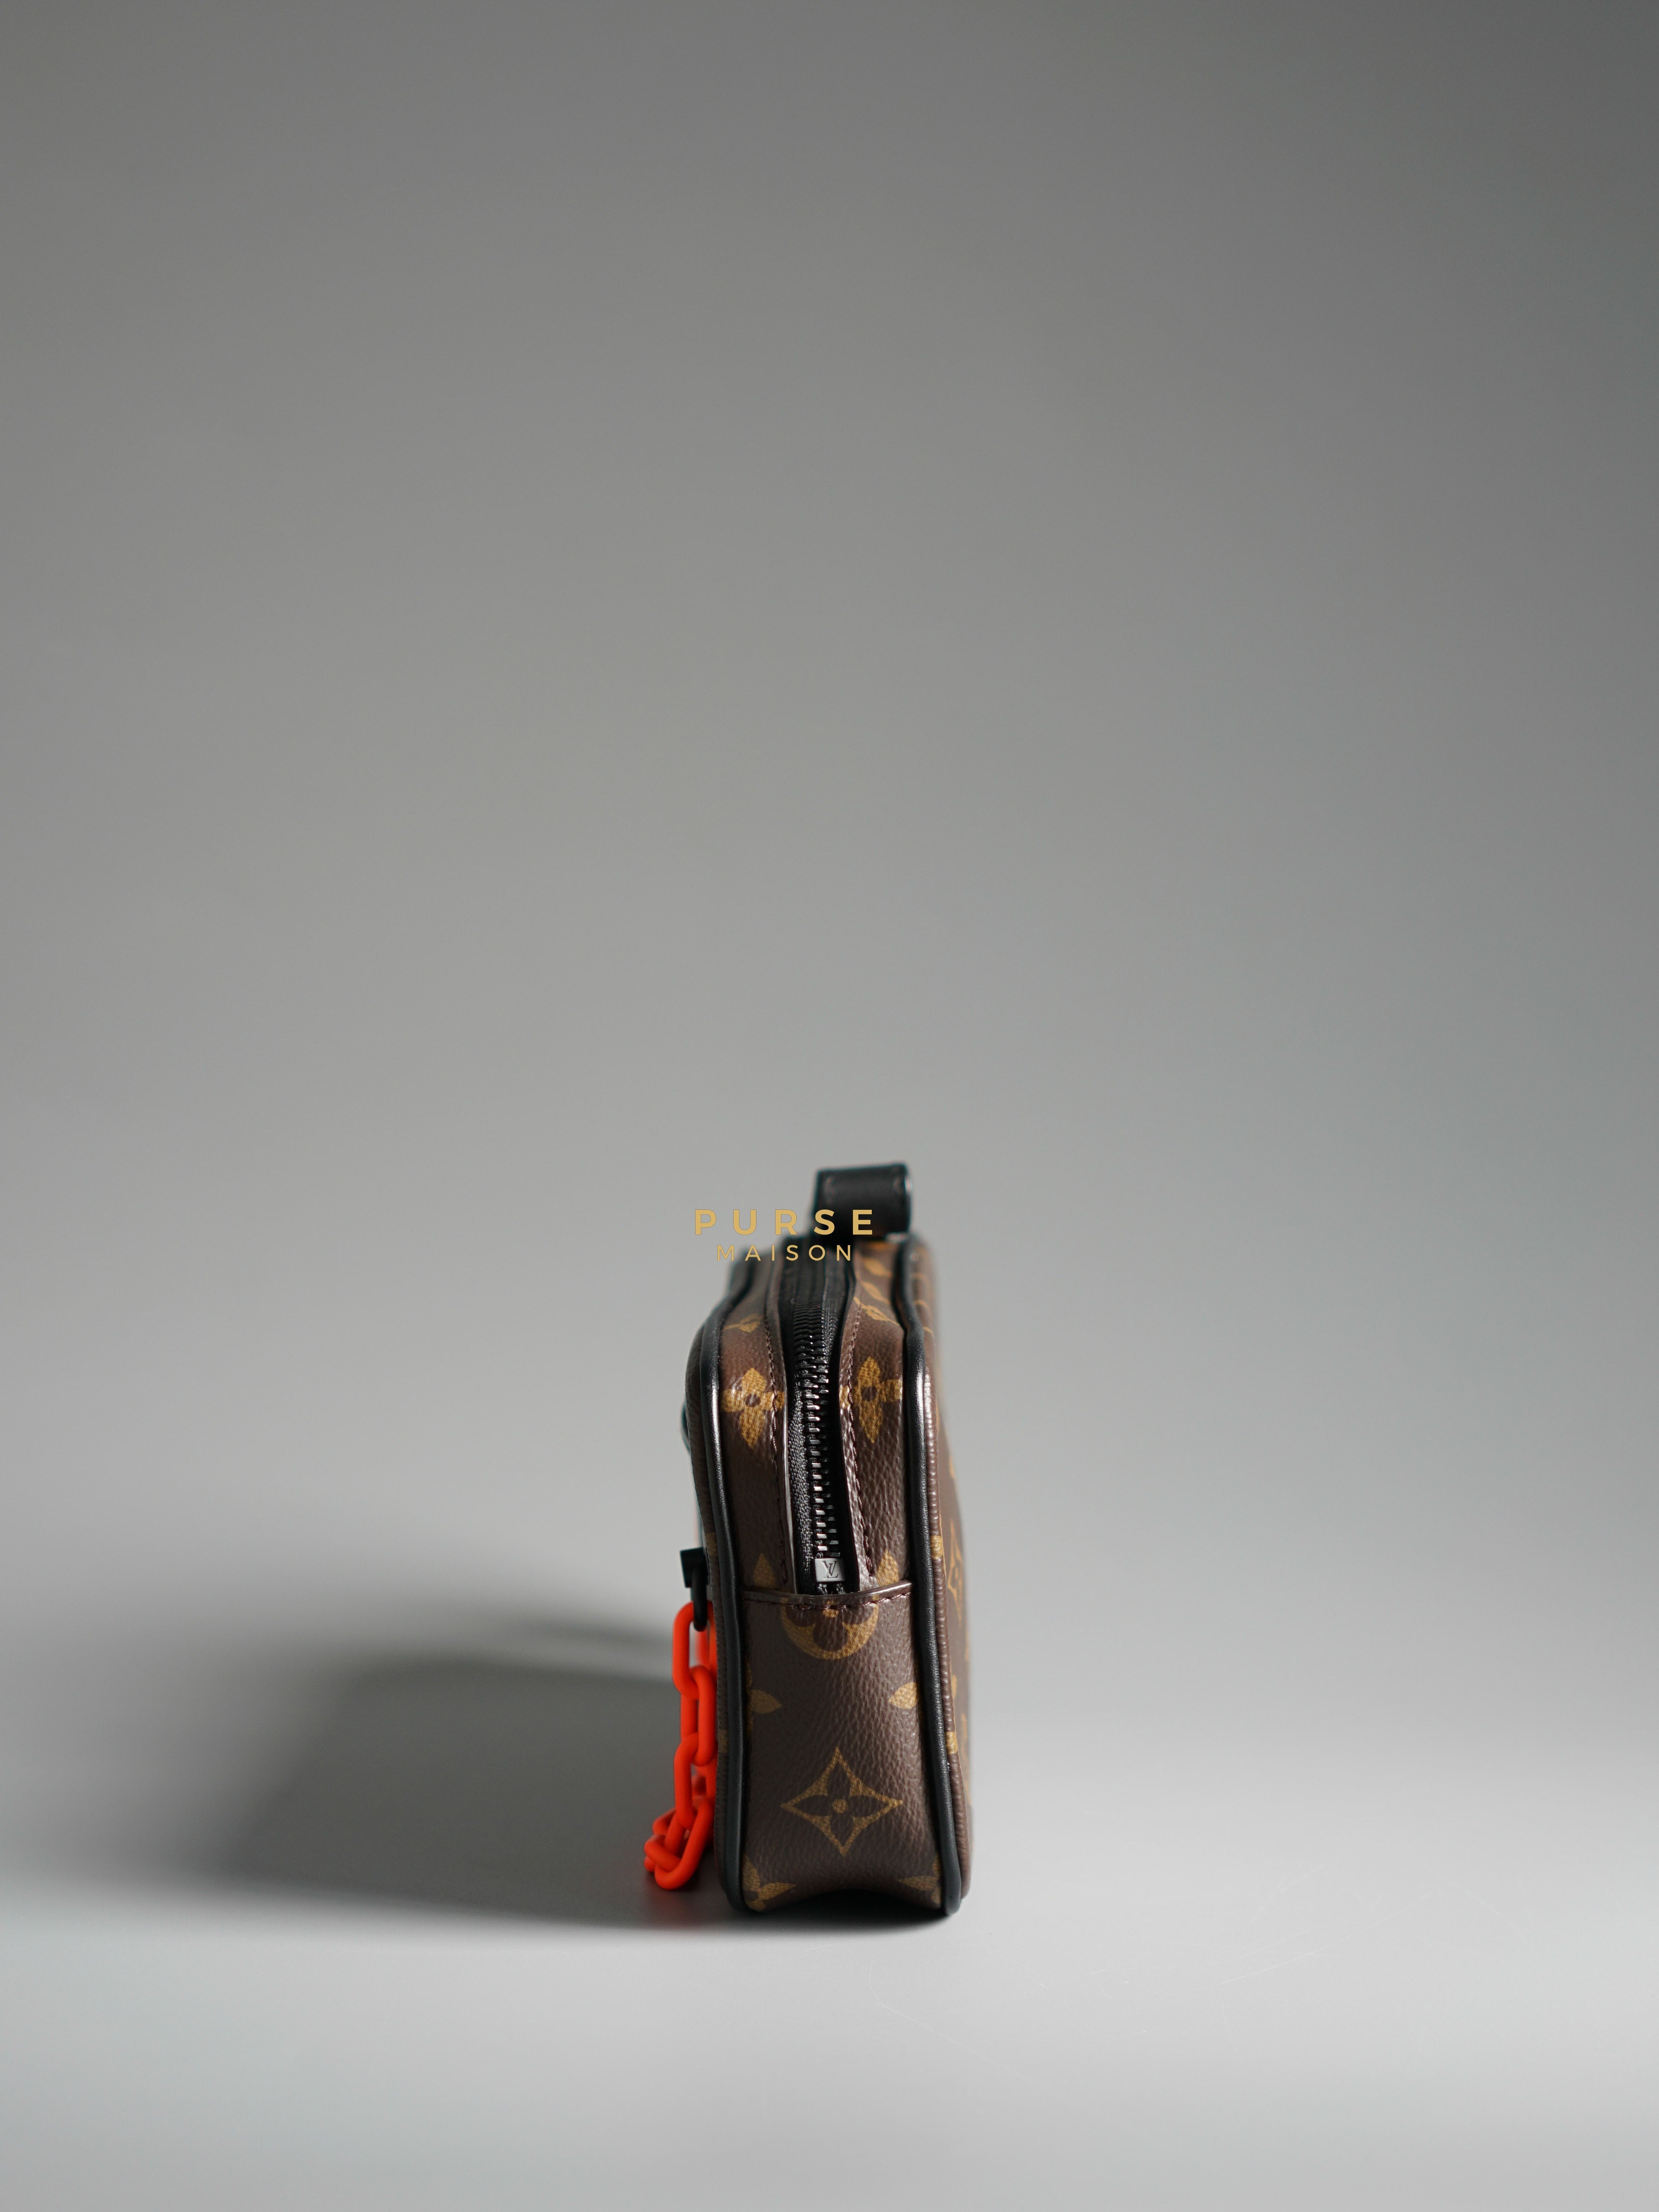 Louis Vuitton Pochette Volga Clutch Bag in Monogram Canvas (Date code: SP4129) | Purse Maison Luxury Bags Shop